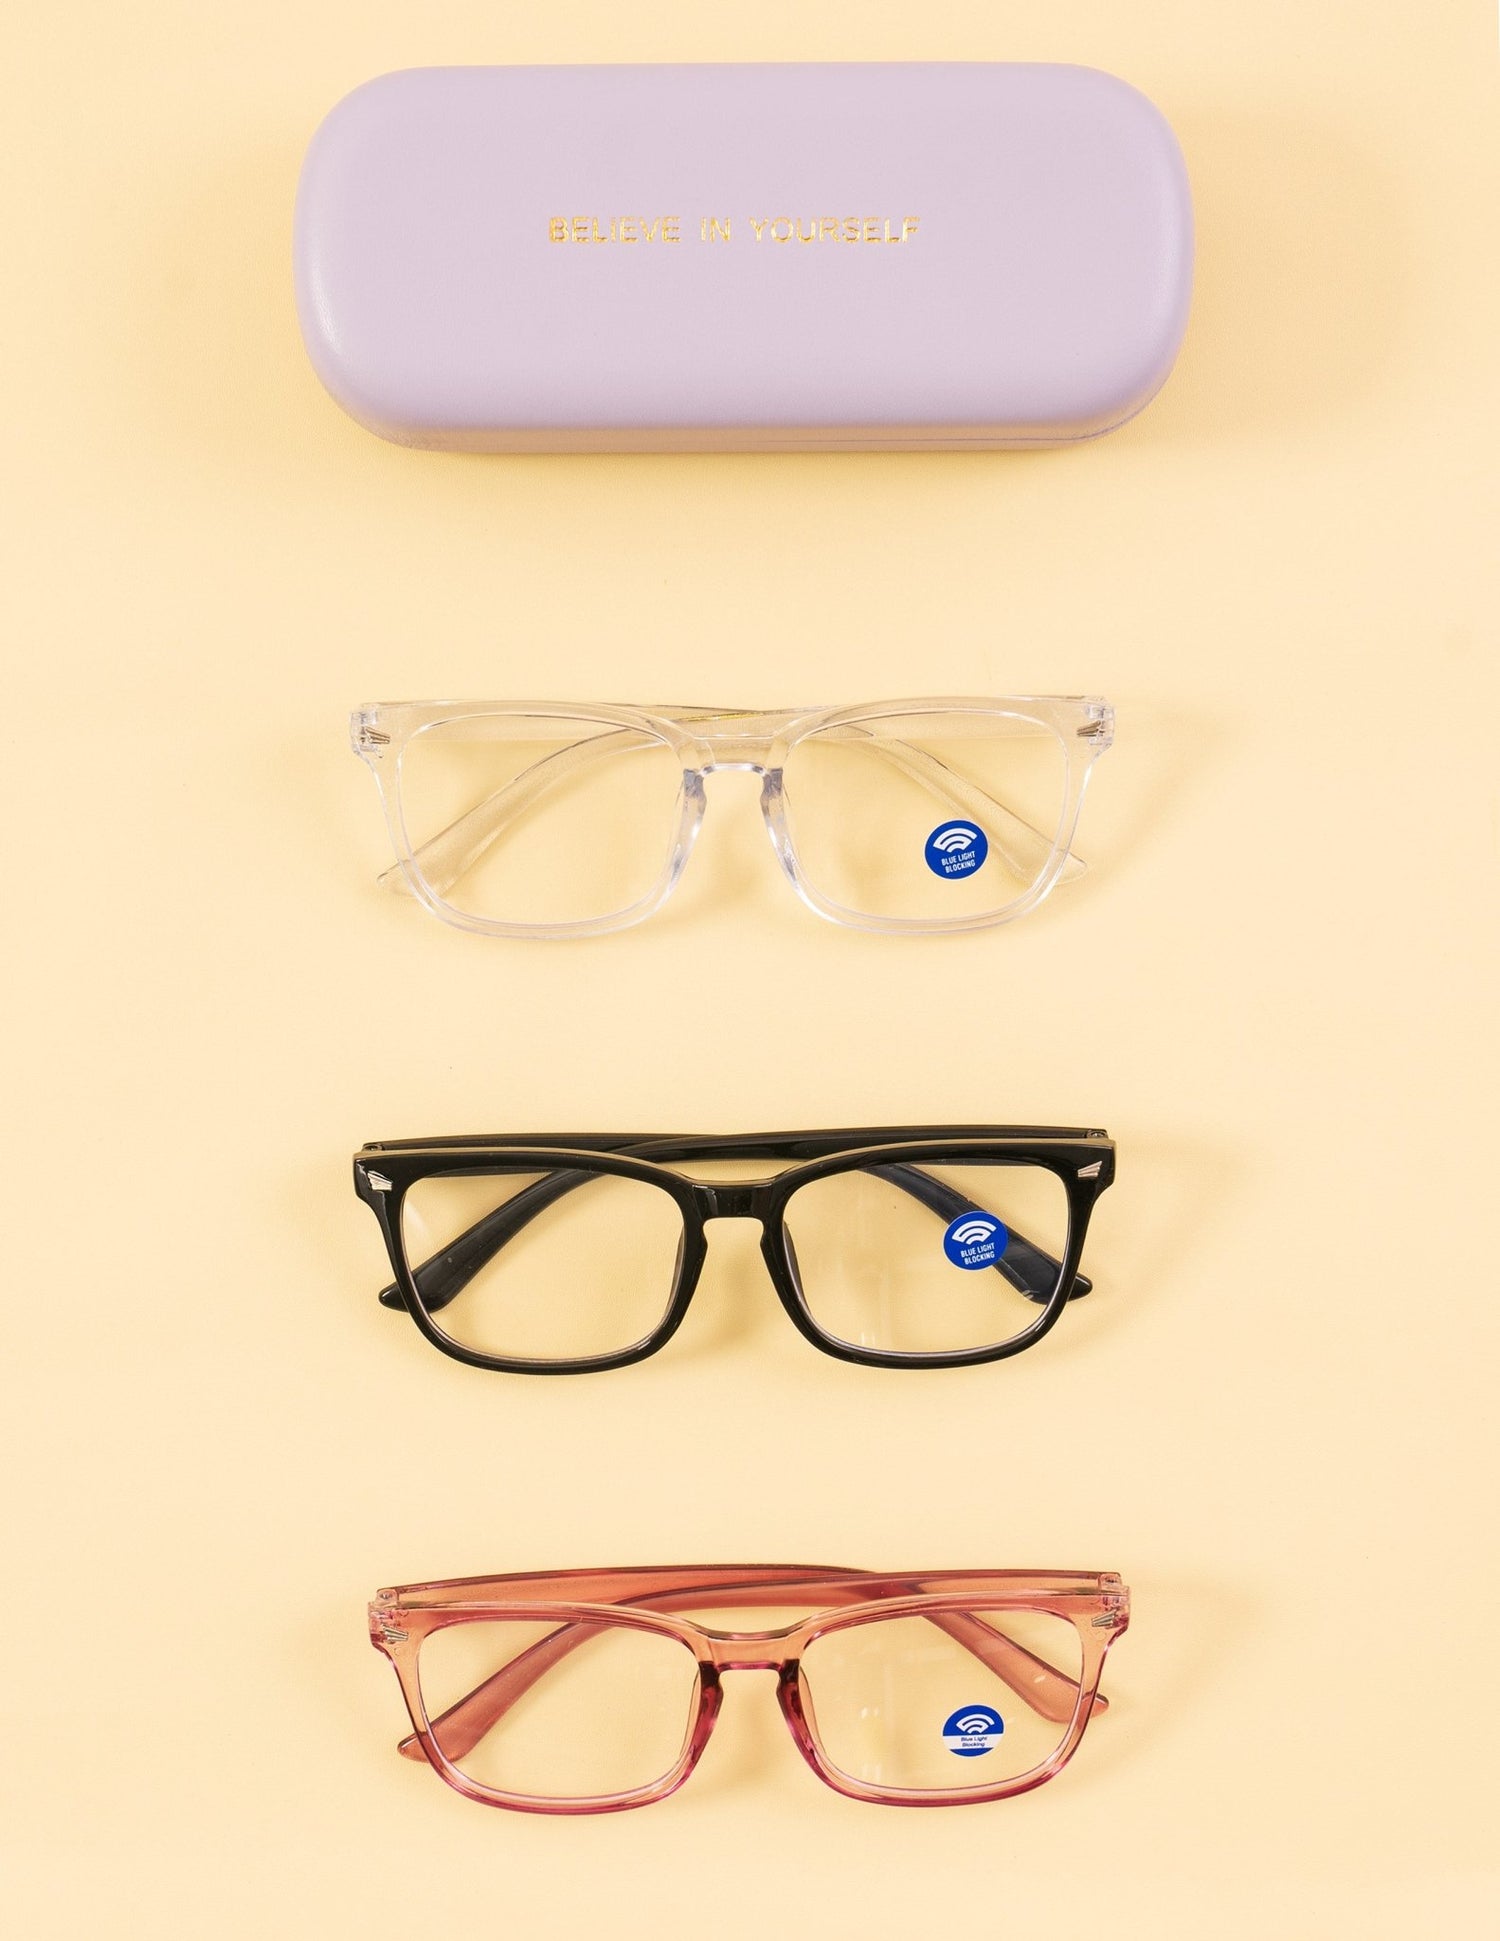 Digital Detox AF Glasses